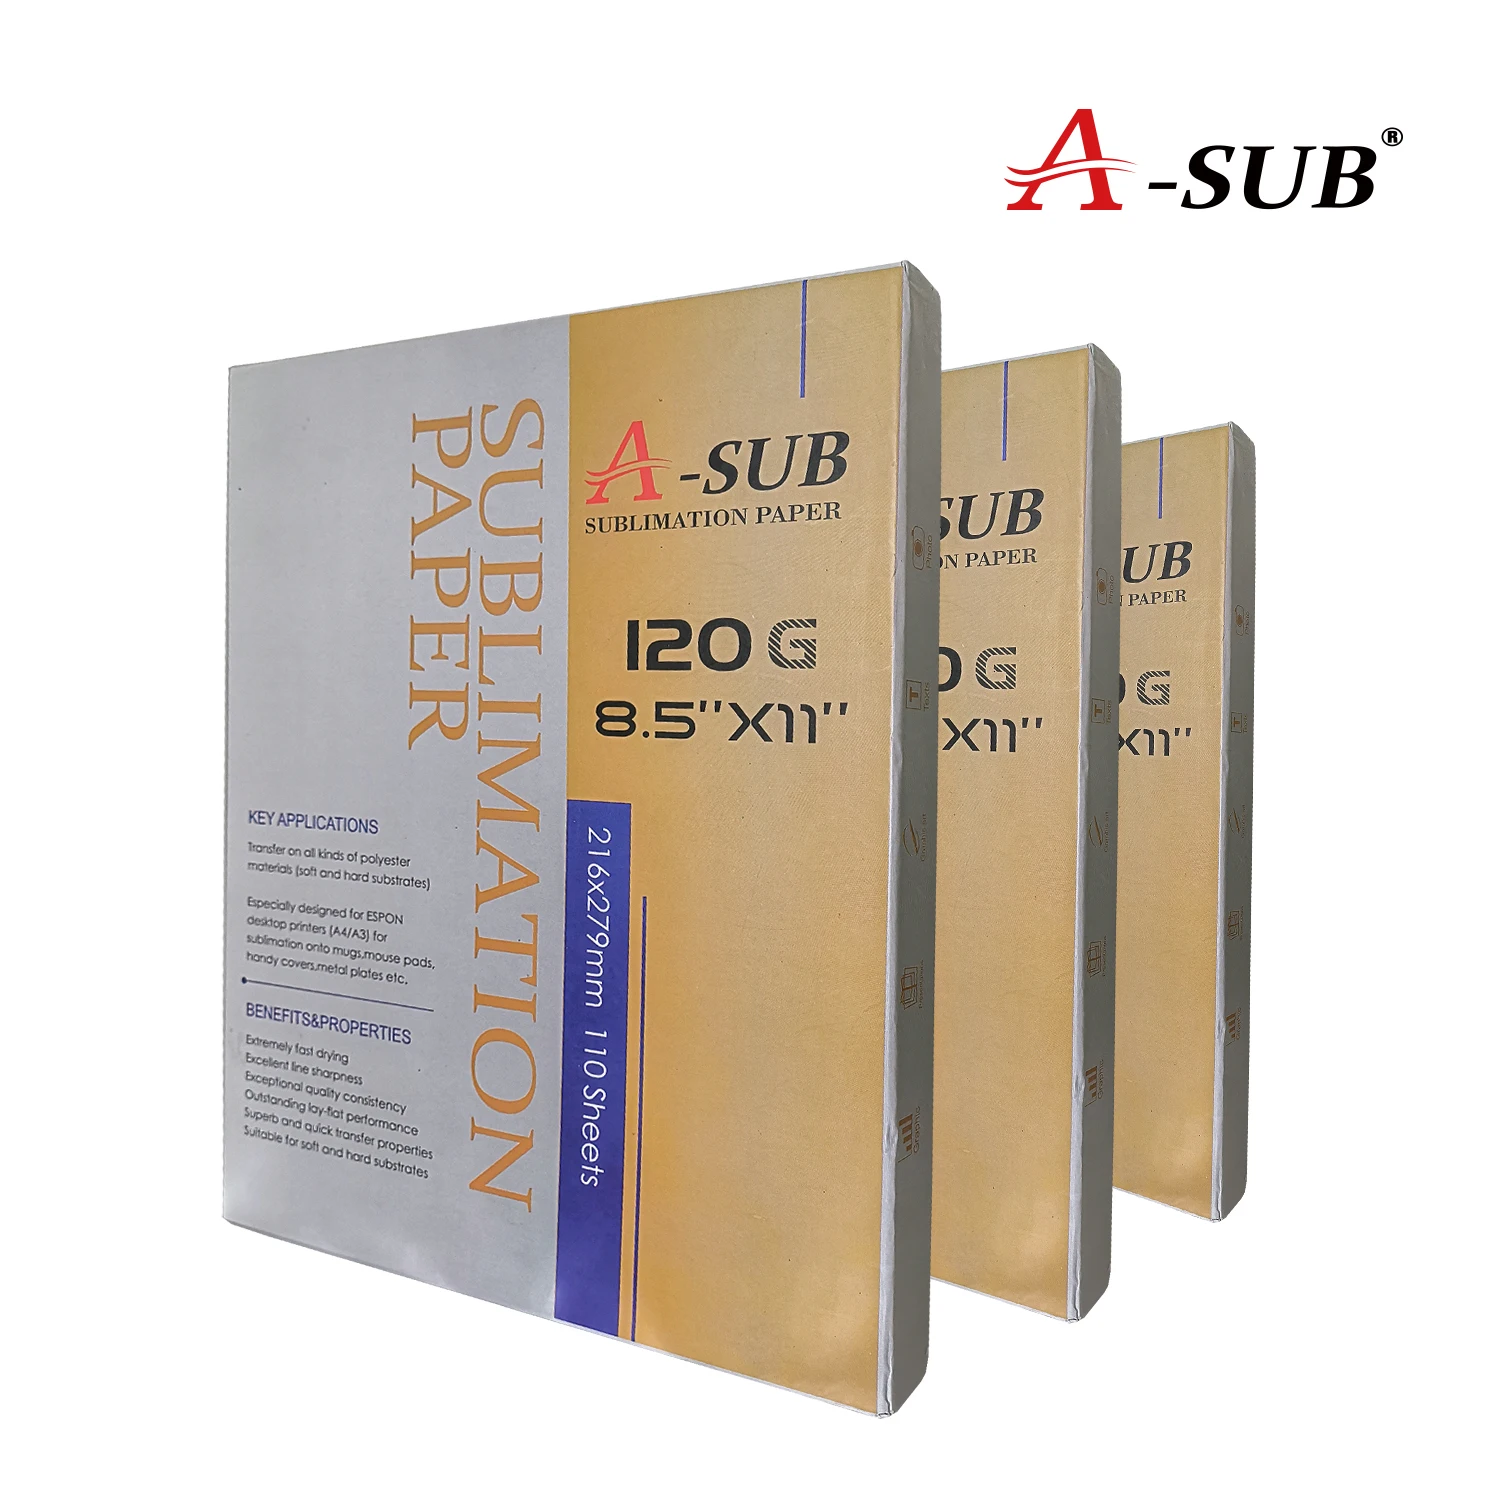 A-sub 113G Sublimation Paper 8.5x11 